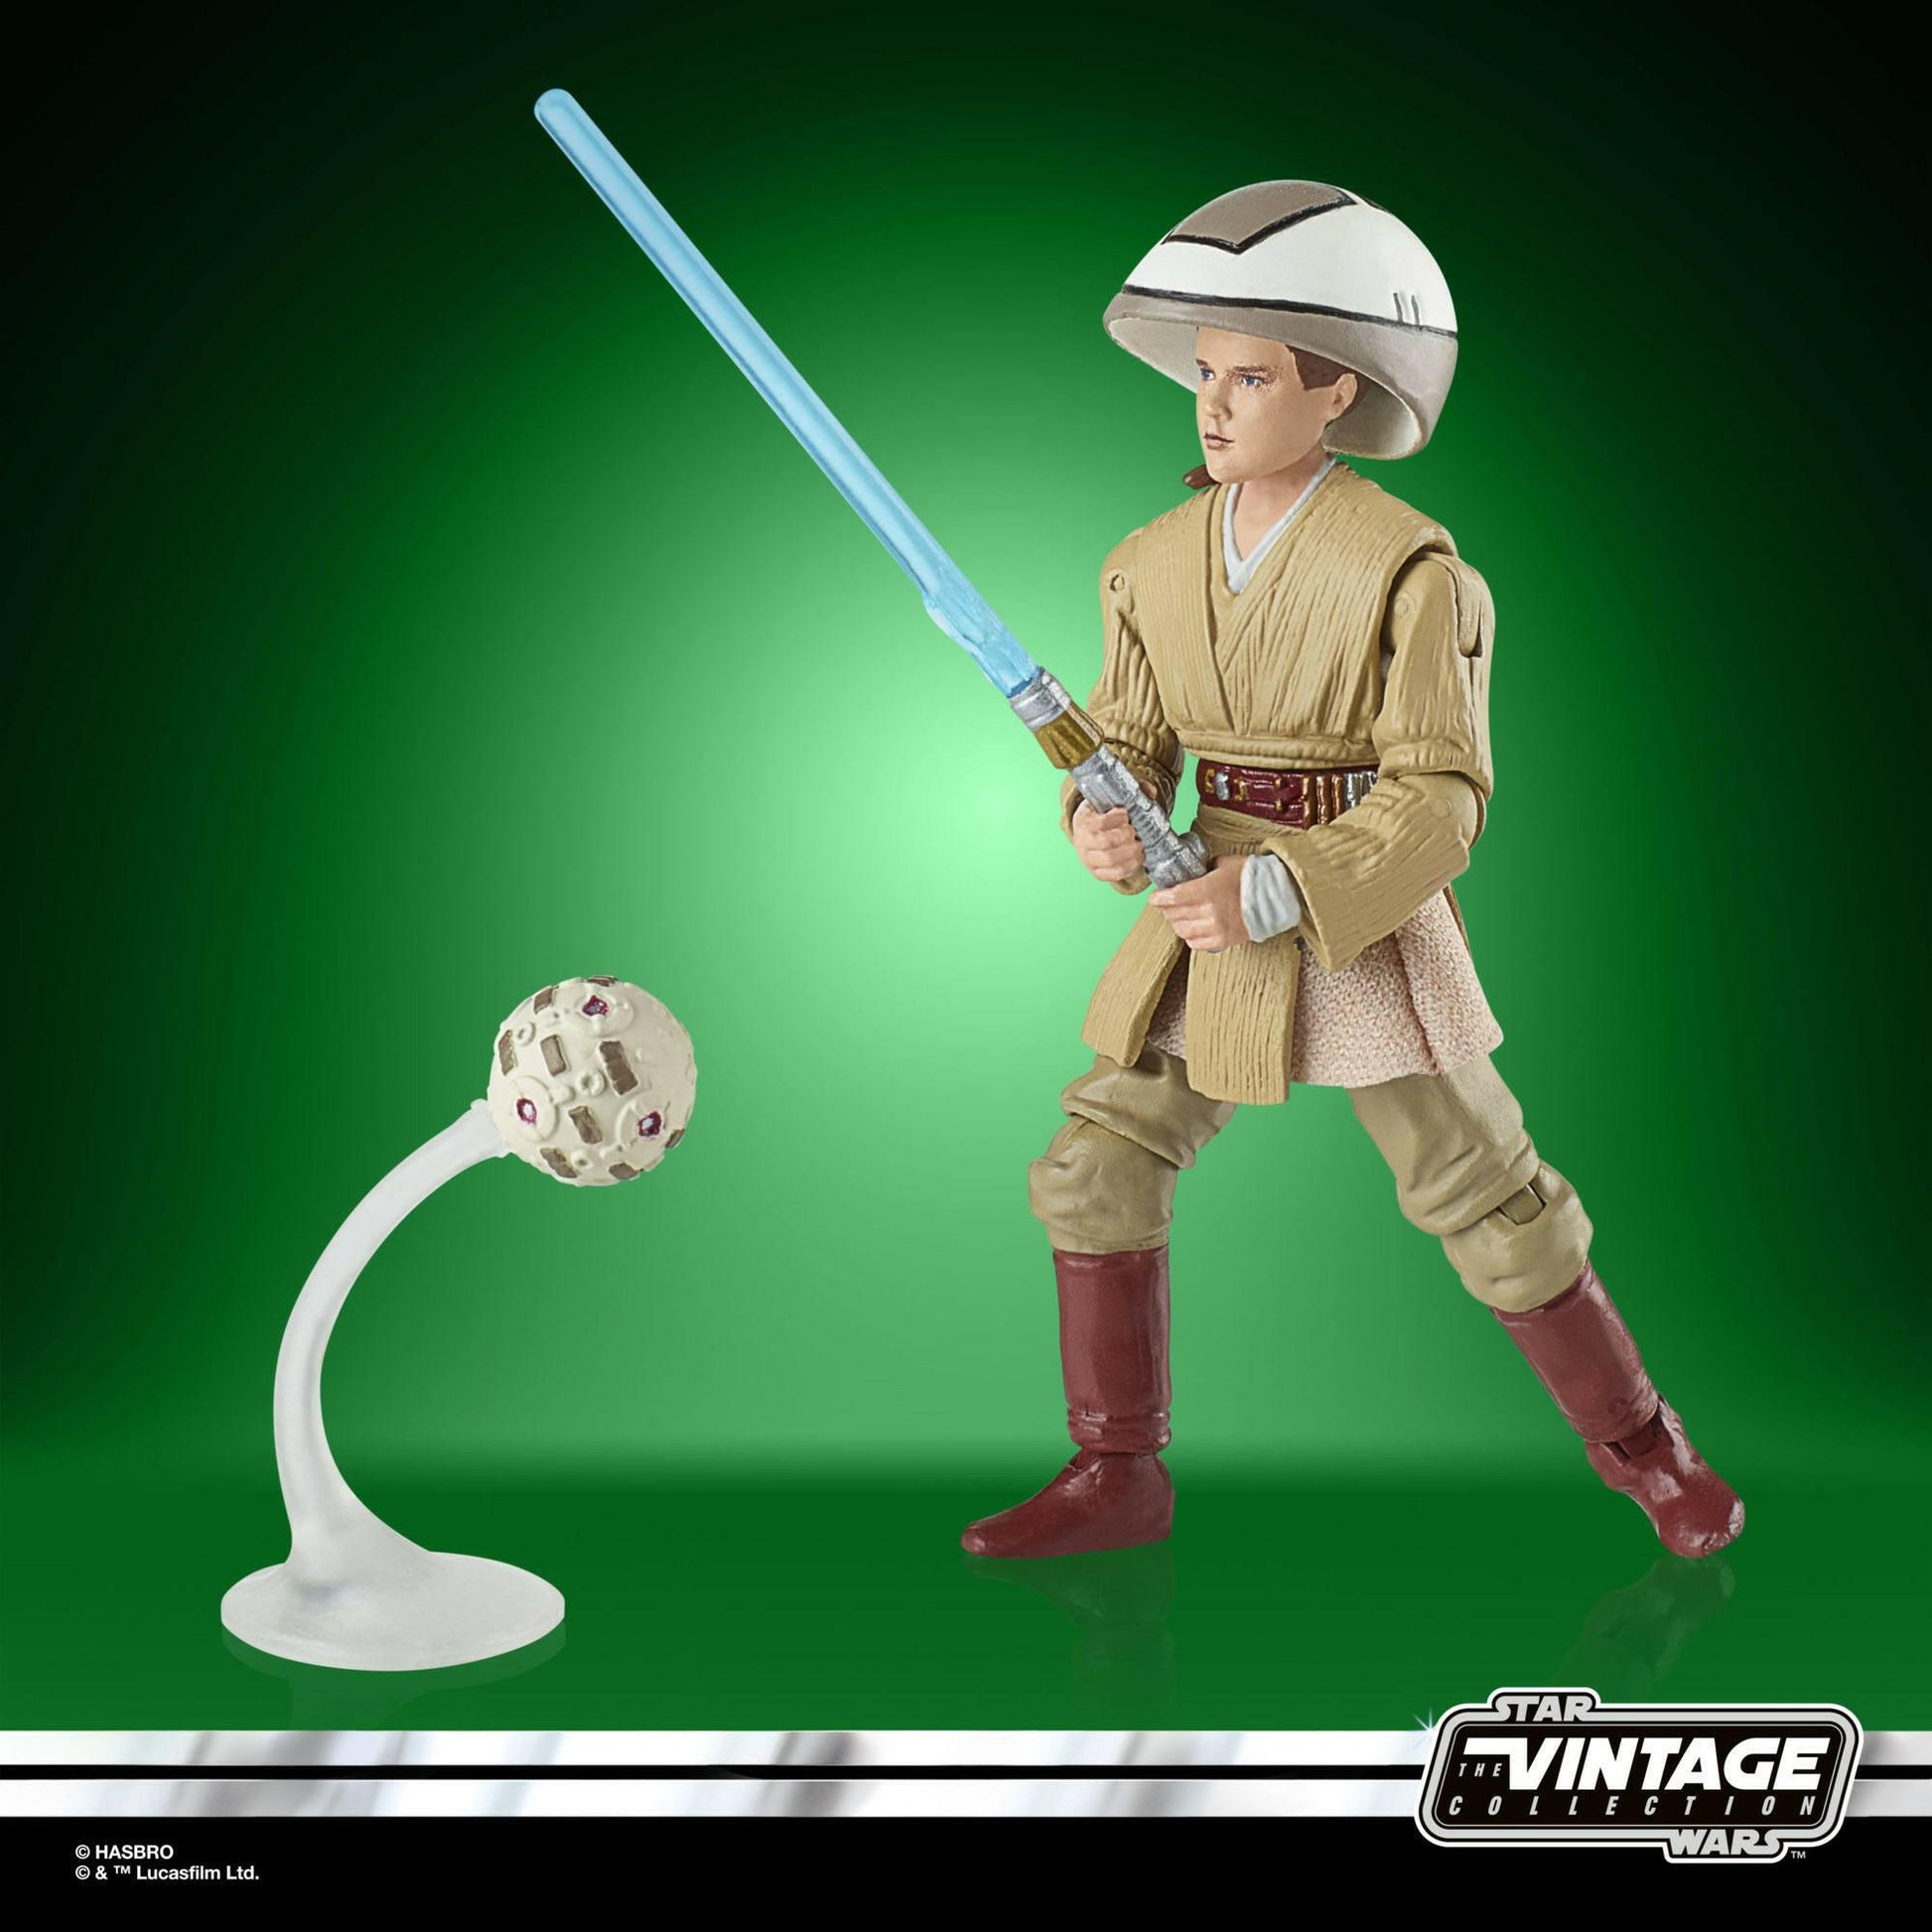 Star Wars Vintage Collection Episode I Actionfigur 2022 Anakin Skywalker 10cm Hasbro